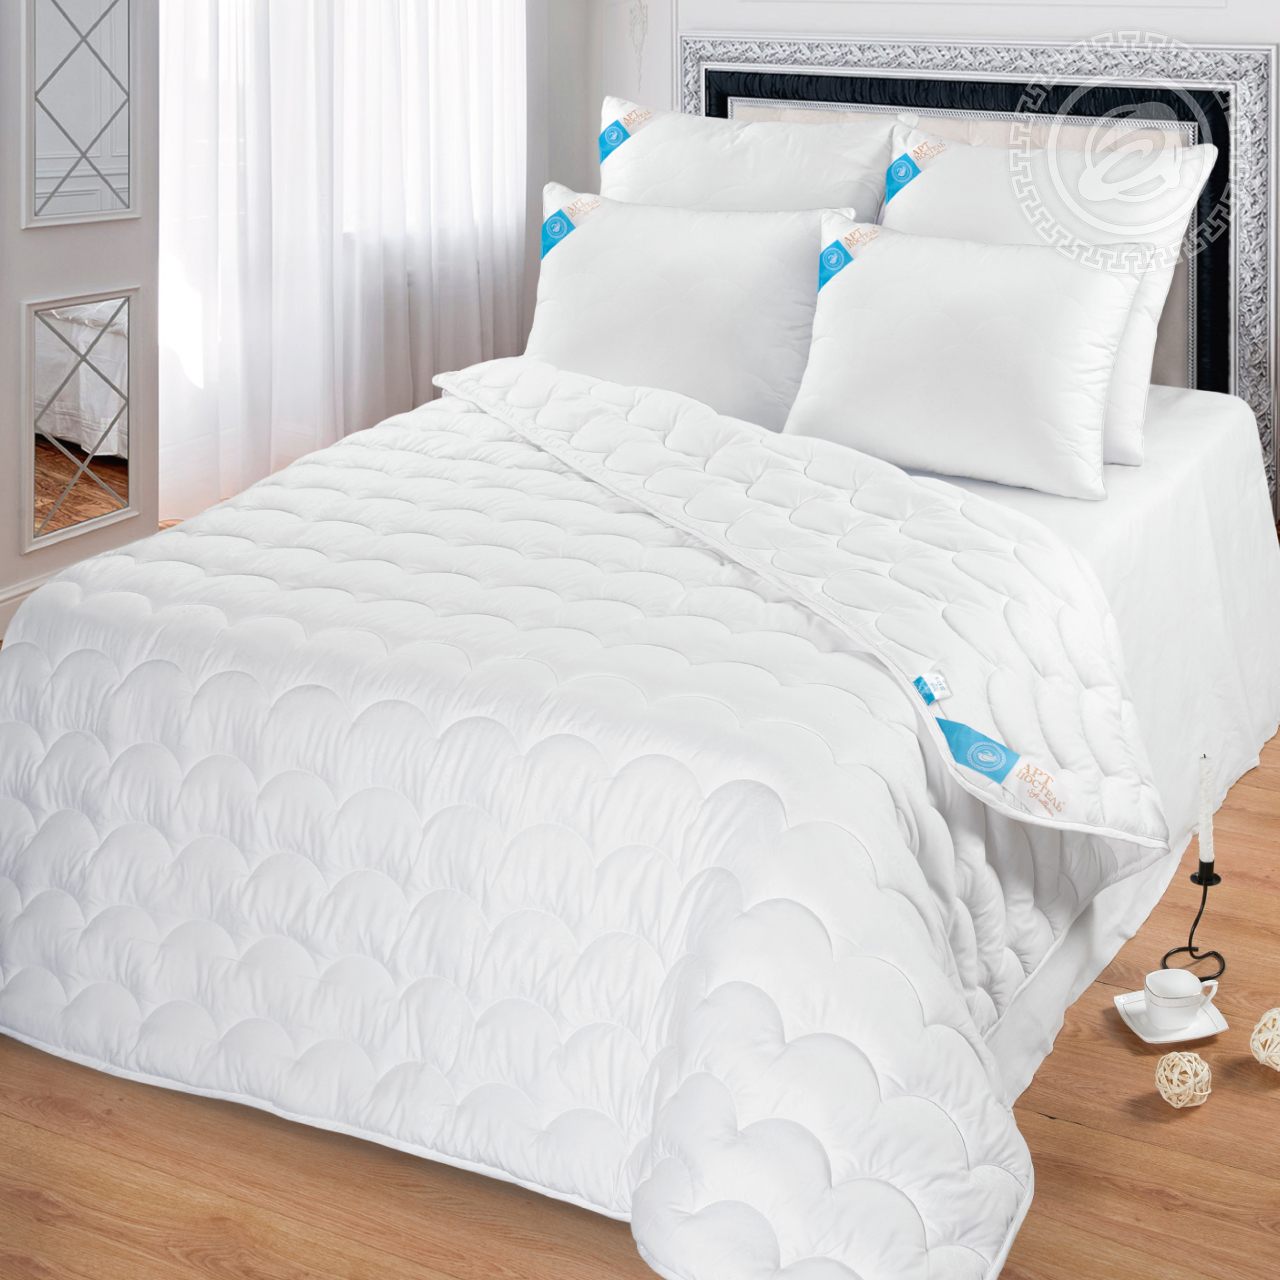 Одеяло Rosella (140х205 см), размер 140х205 см, цвет белый atp417152 Одеяло Rosella (140х205 см) - фото 1